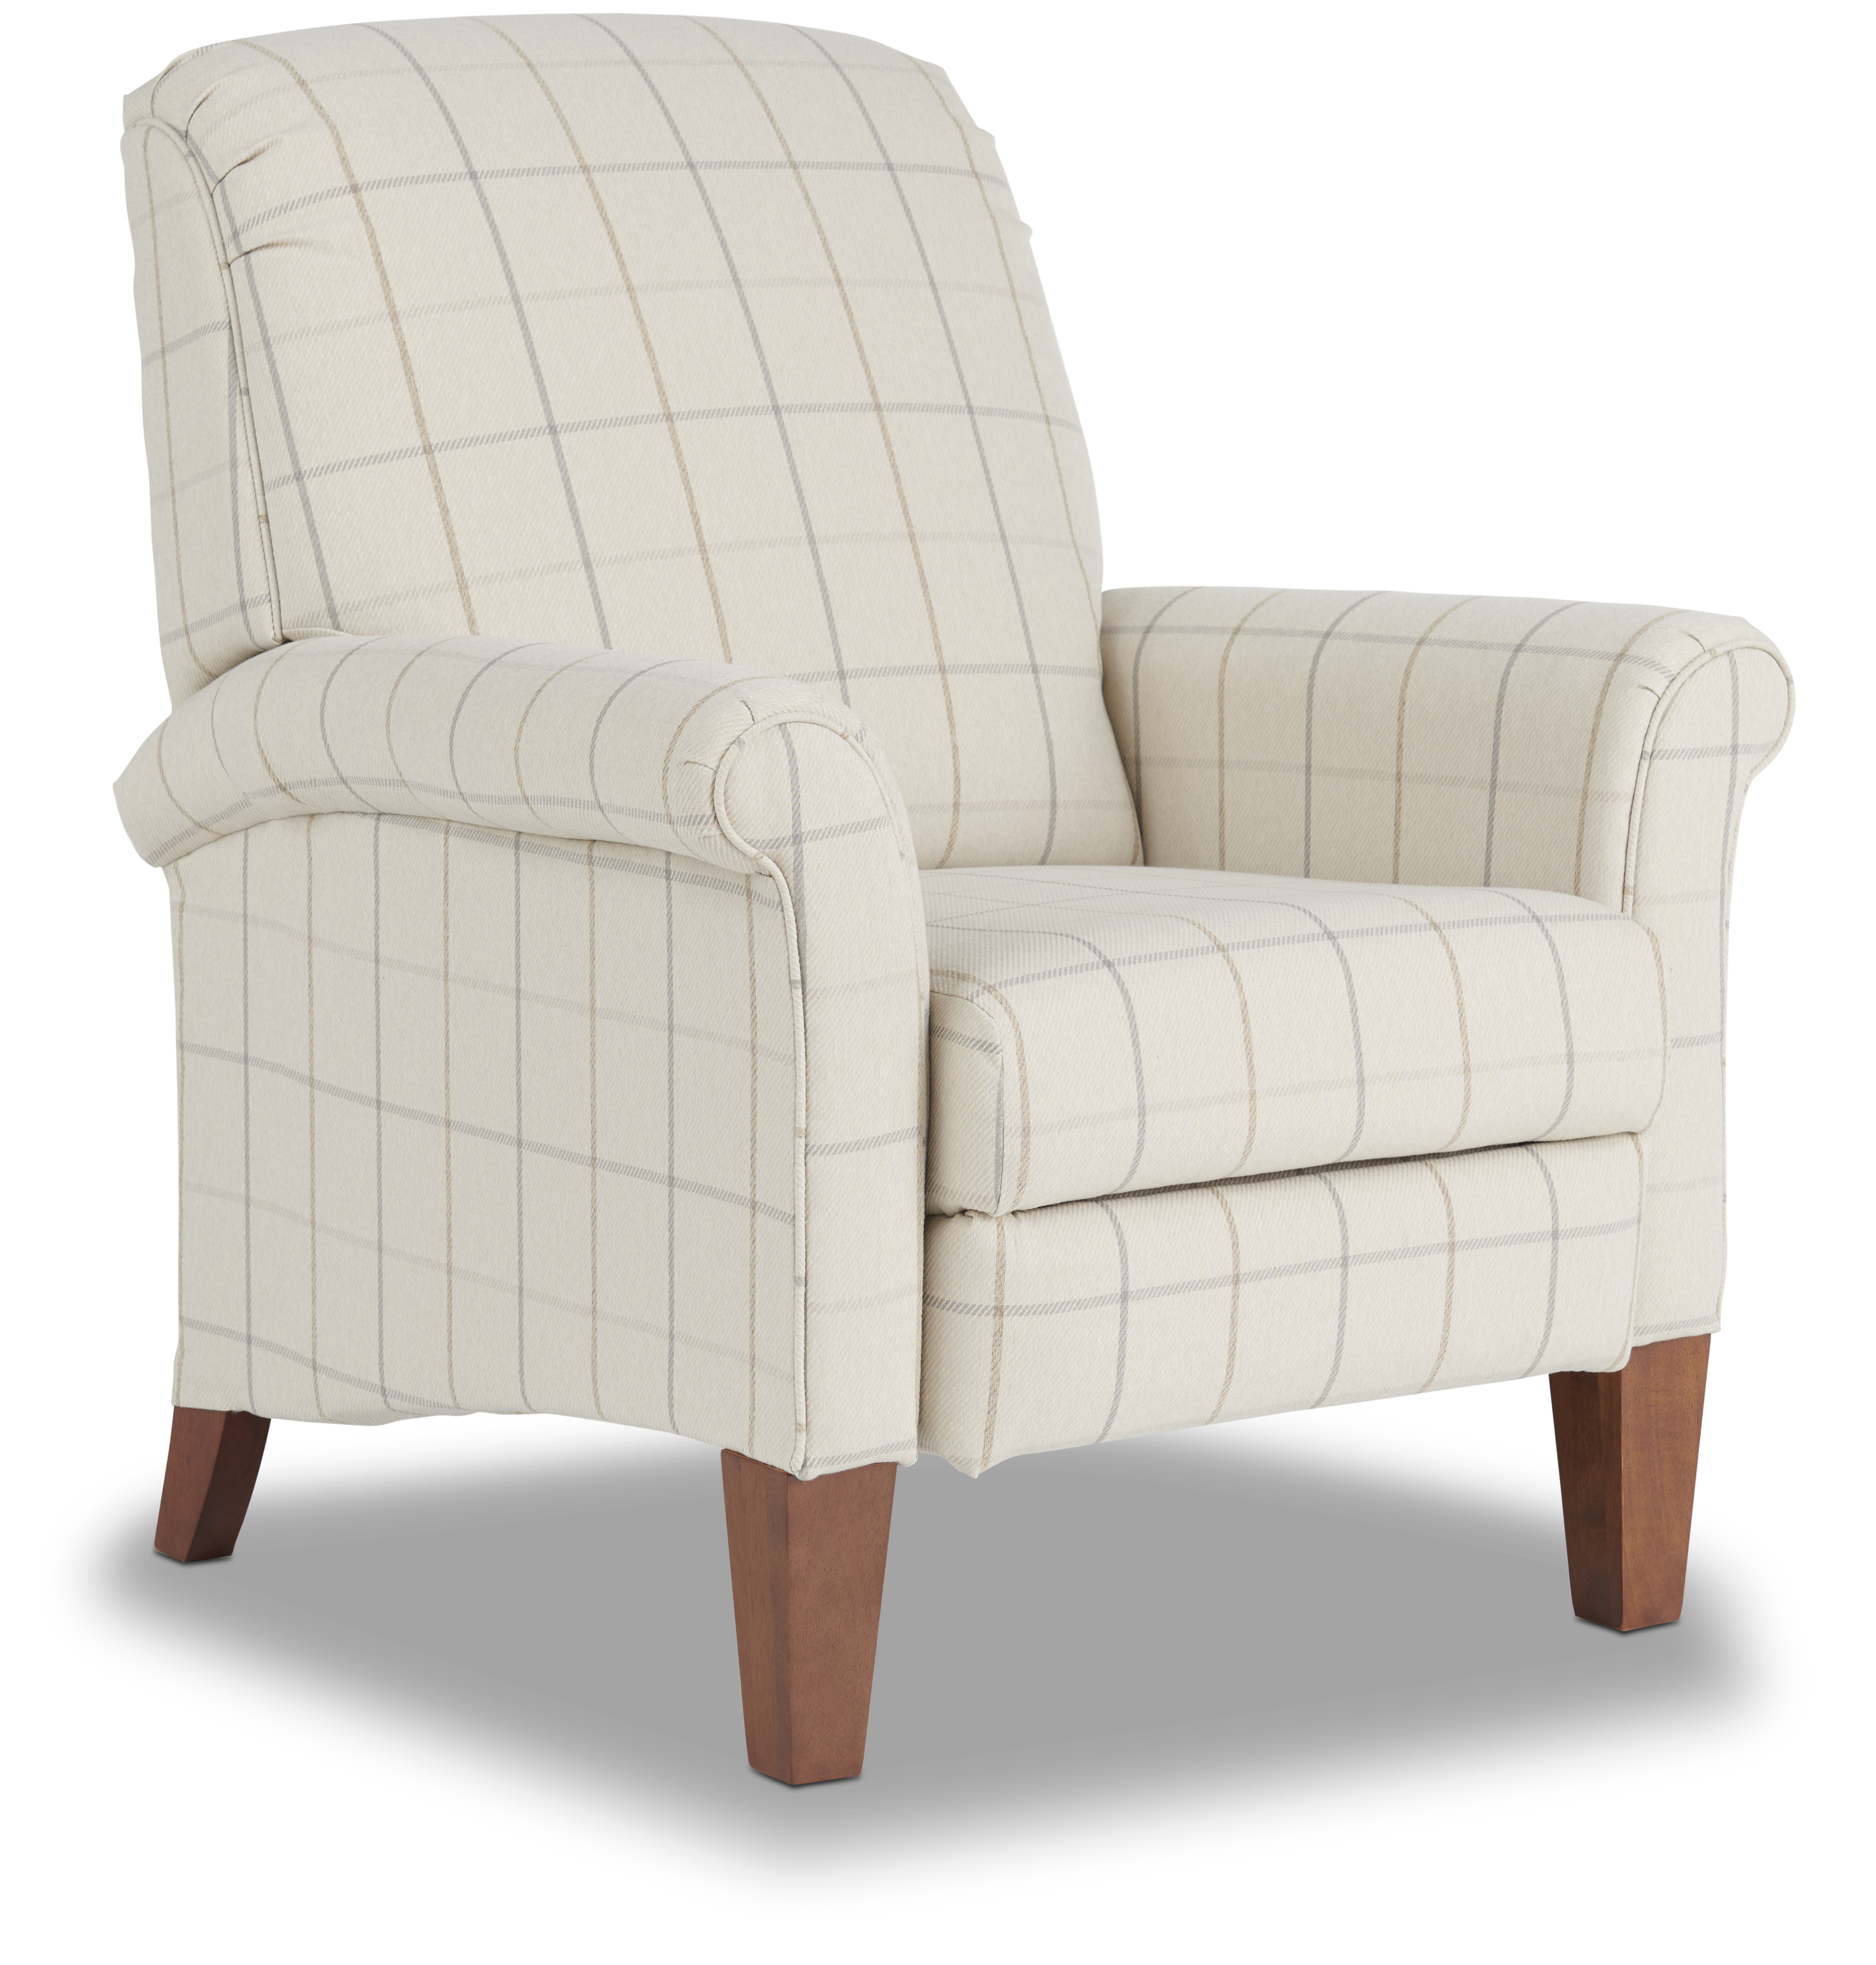 Image - 1 - Fletcher Fabric High Leg Recliner Chair